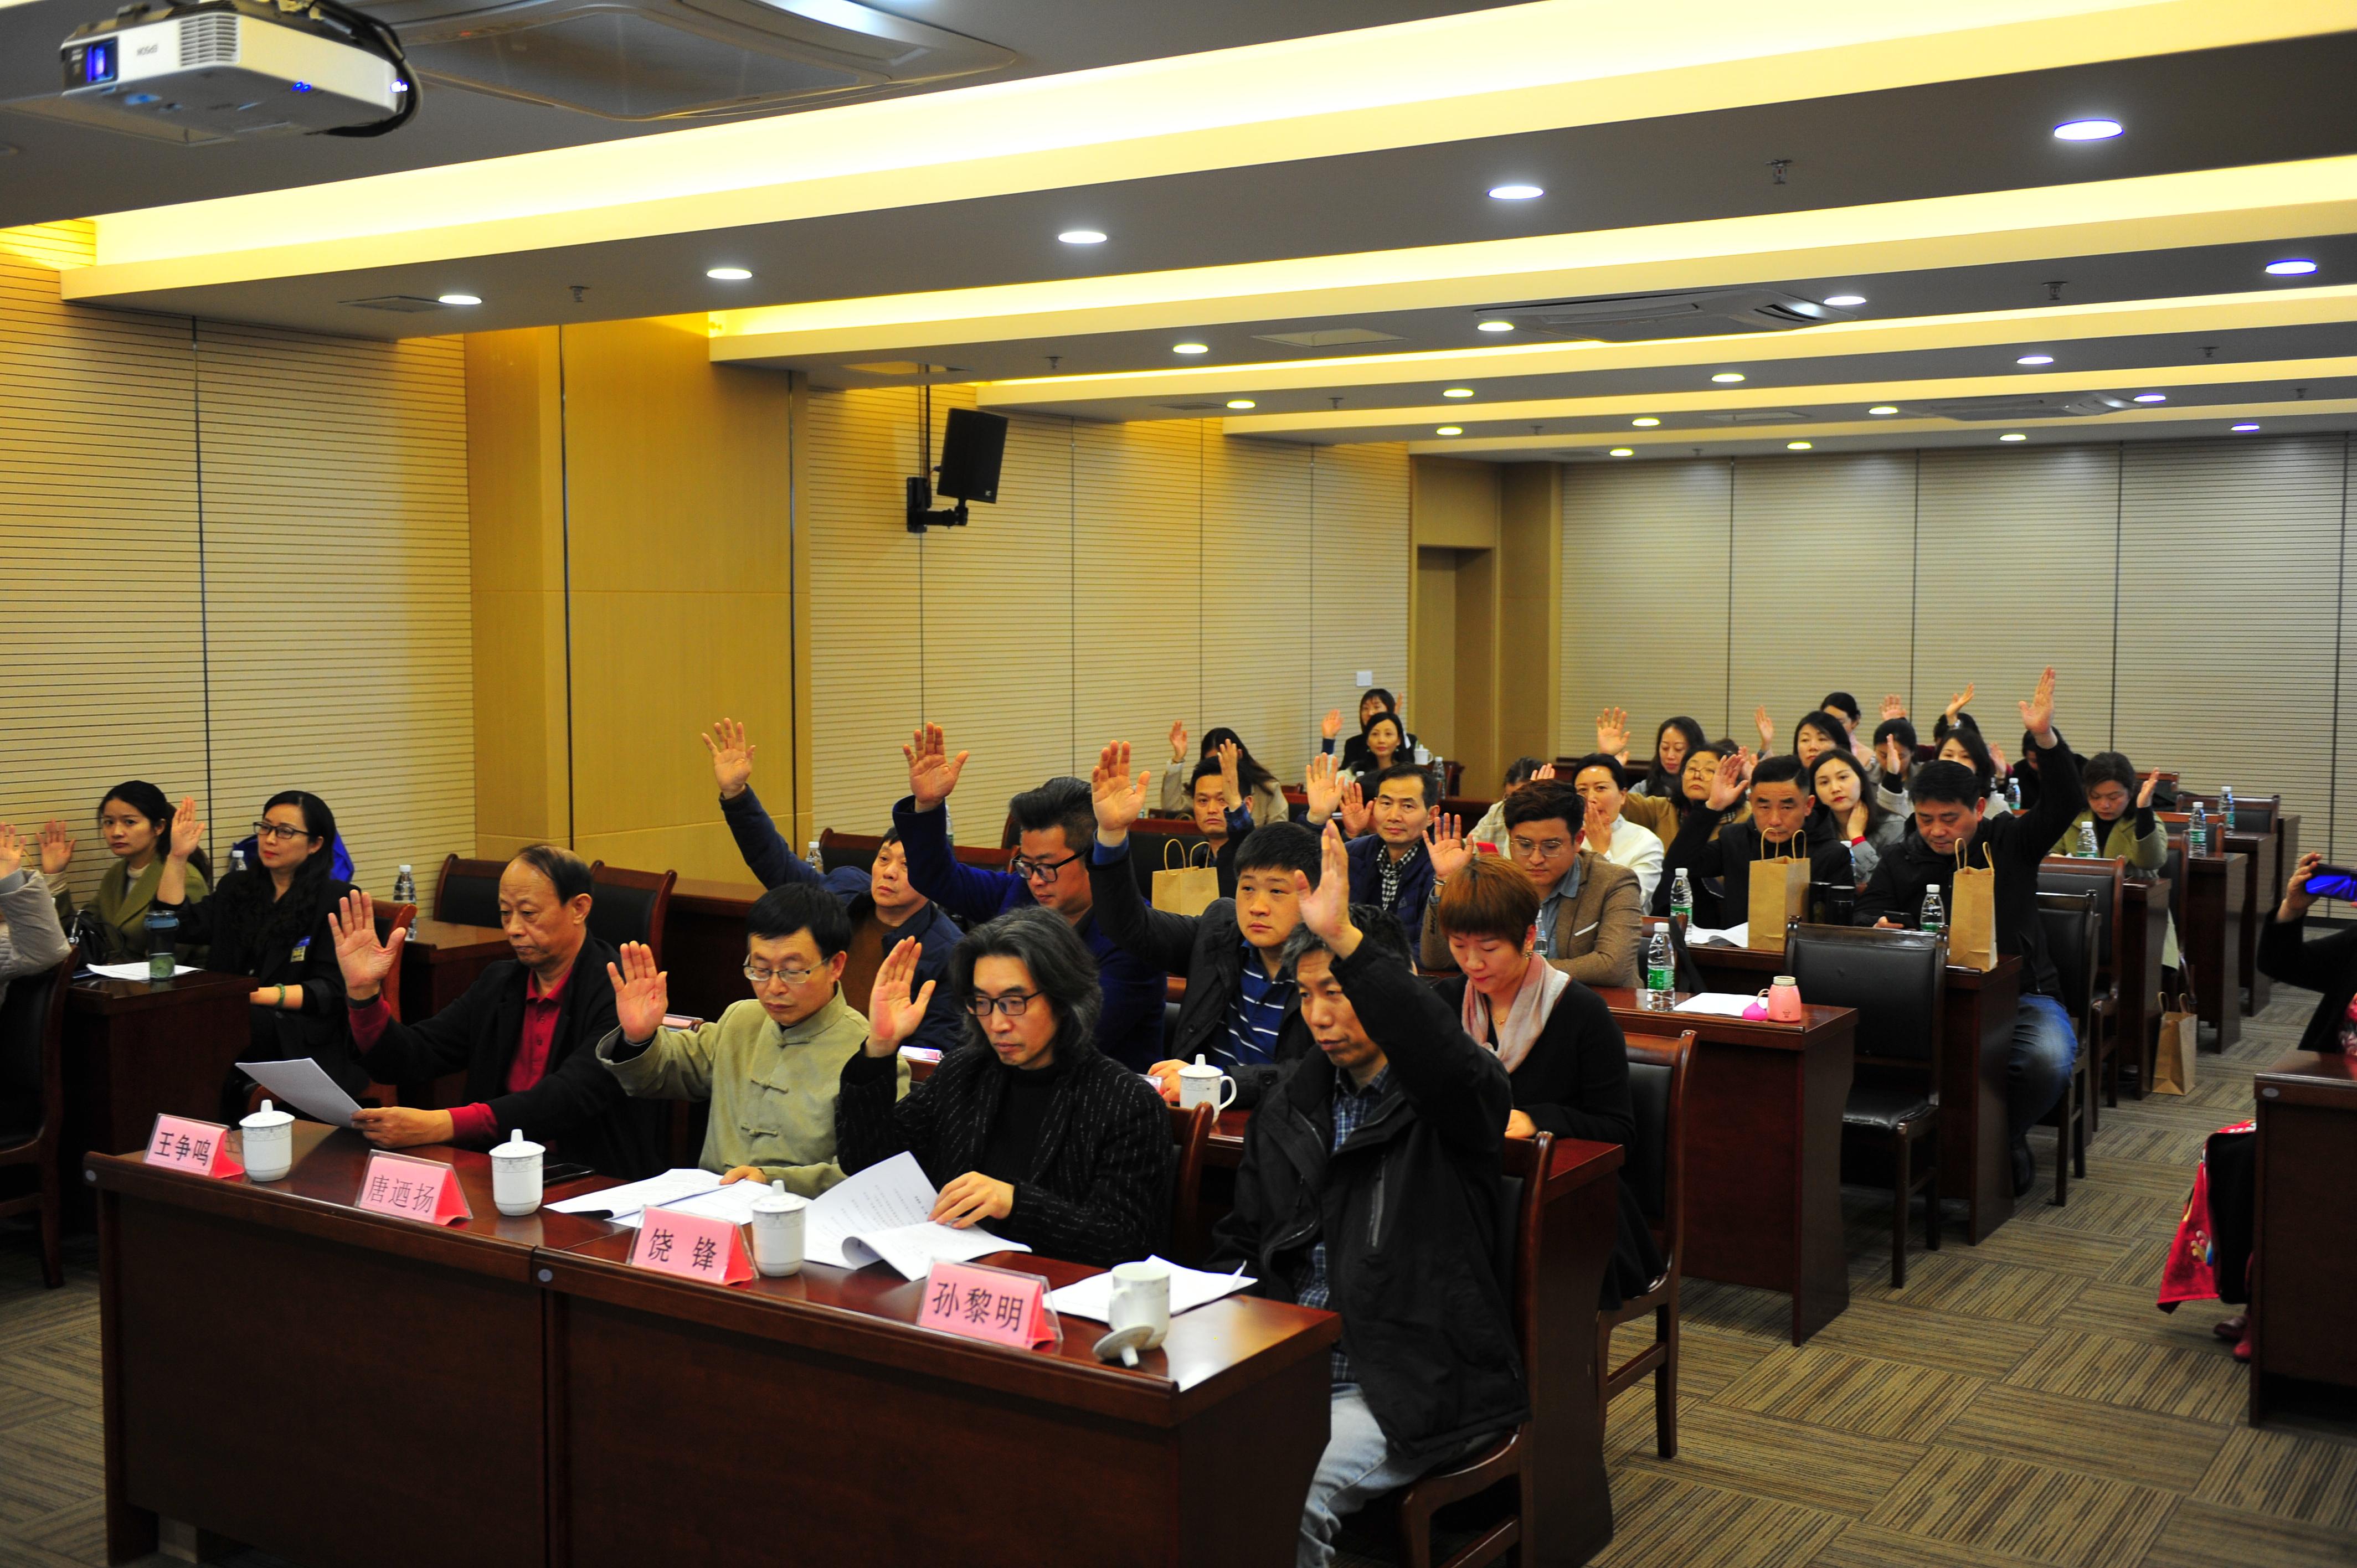 扬州市汉民族服饰艺术研究会召开第二次会员代表大会  选举产生新一届领导班子